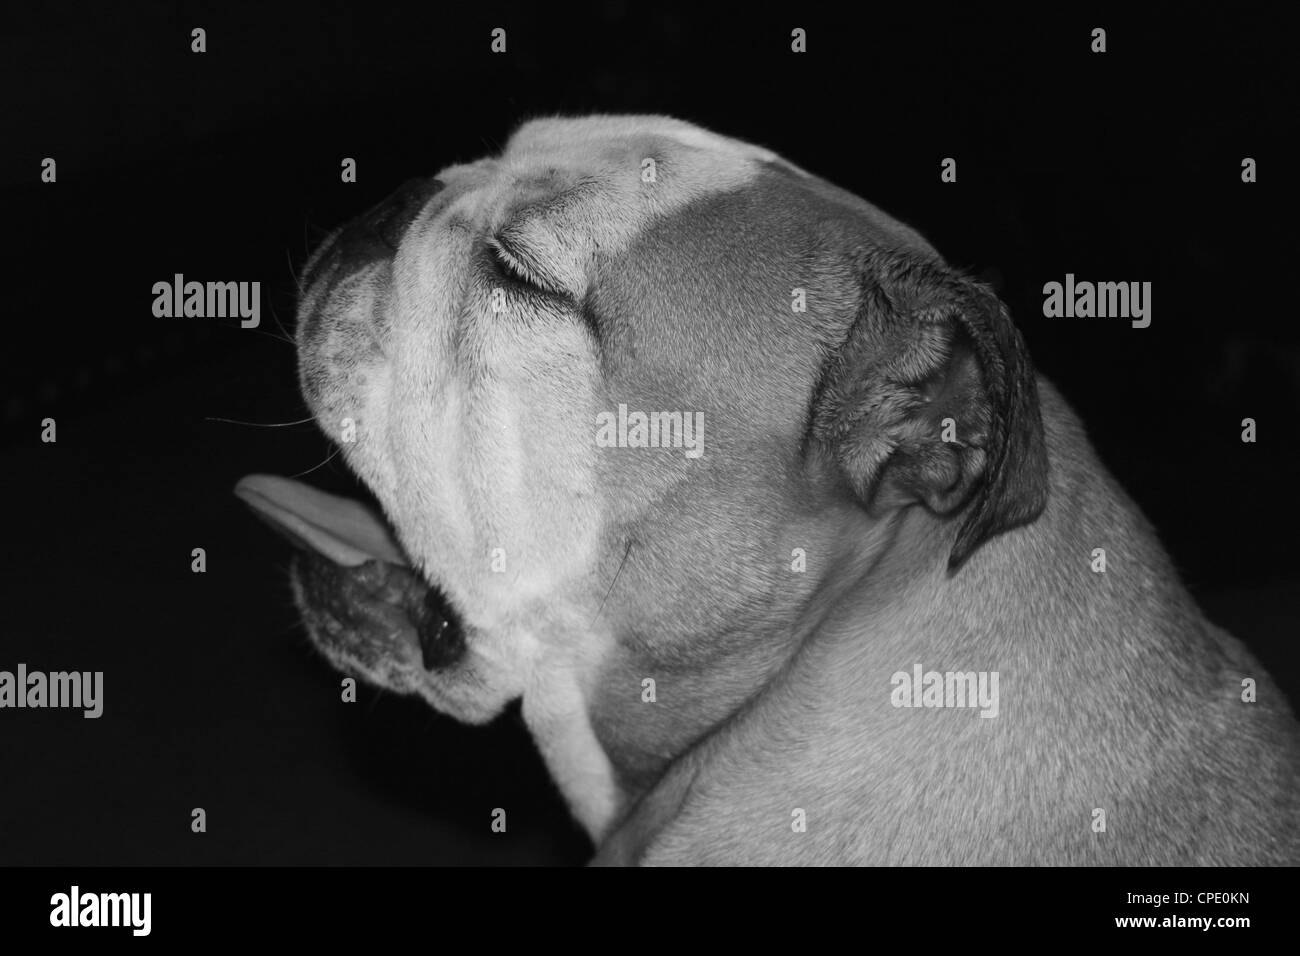 English Bulldog yawning, black and white Stock Photo